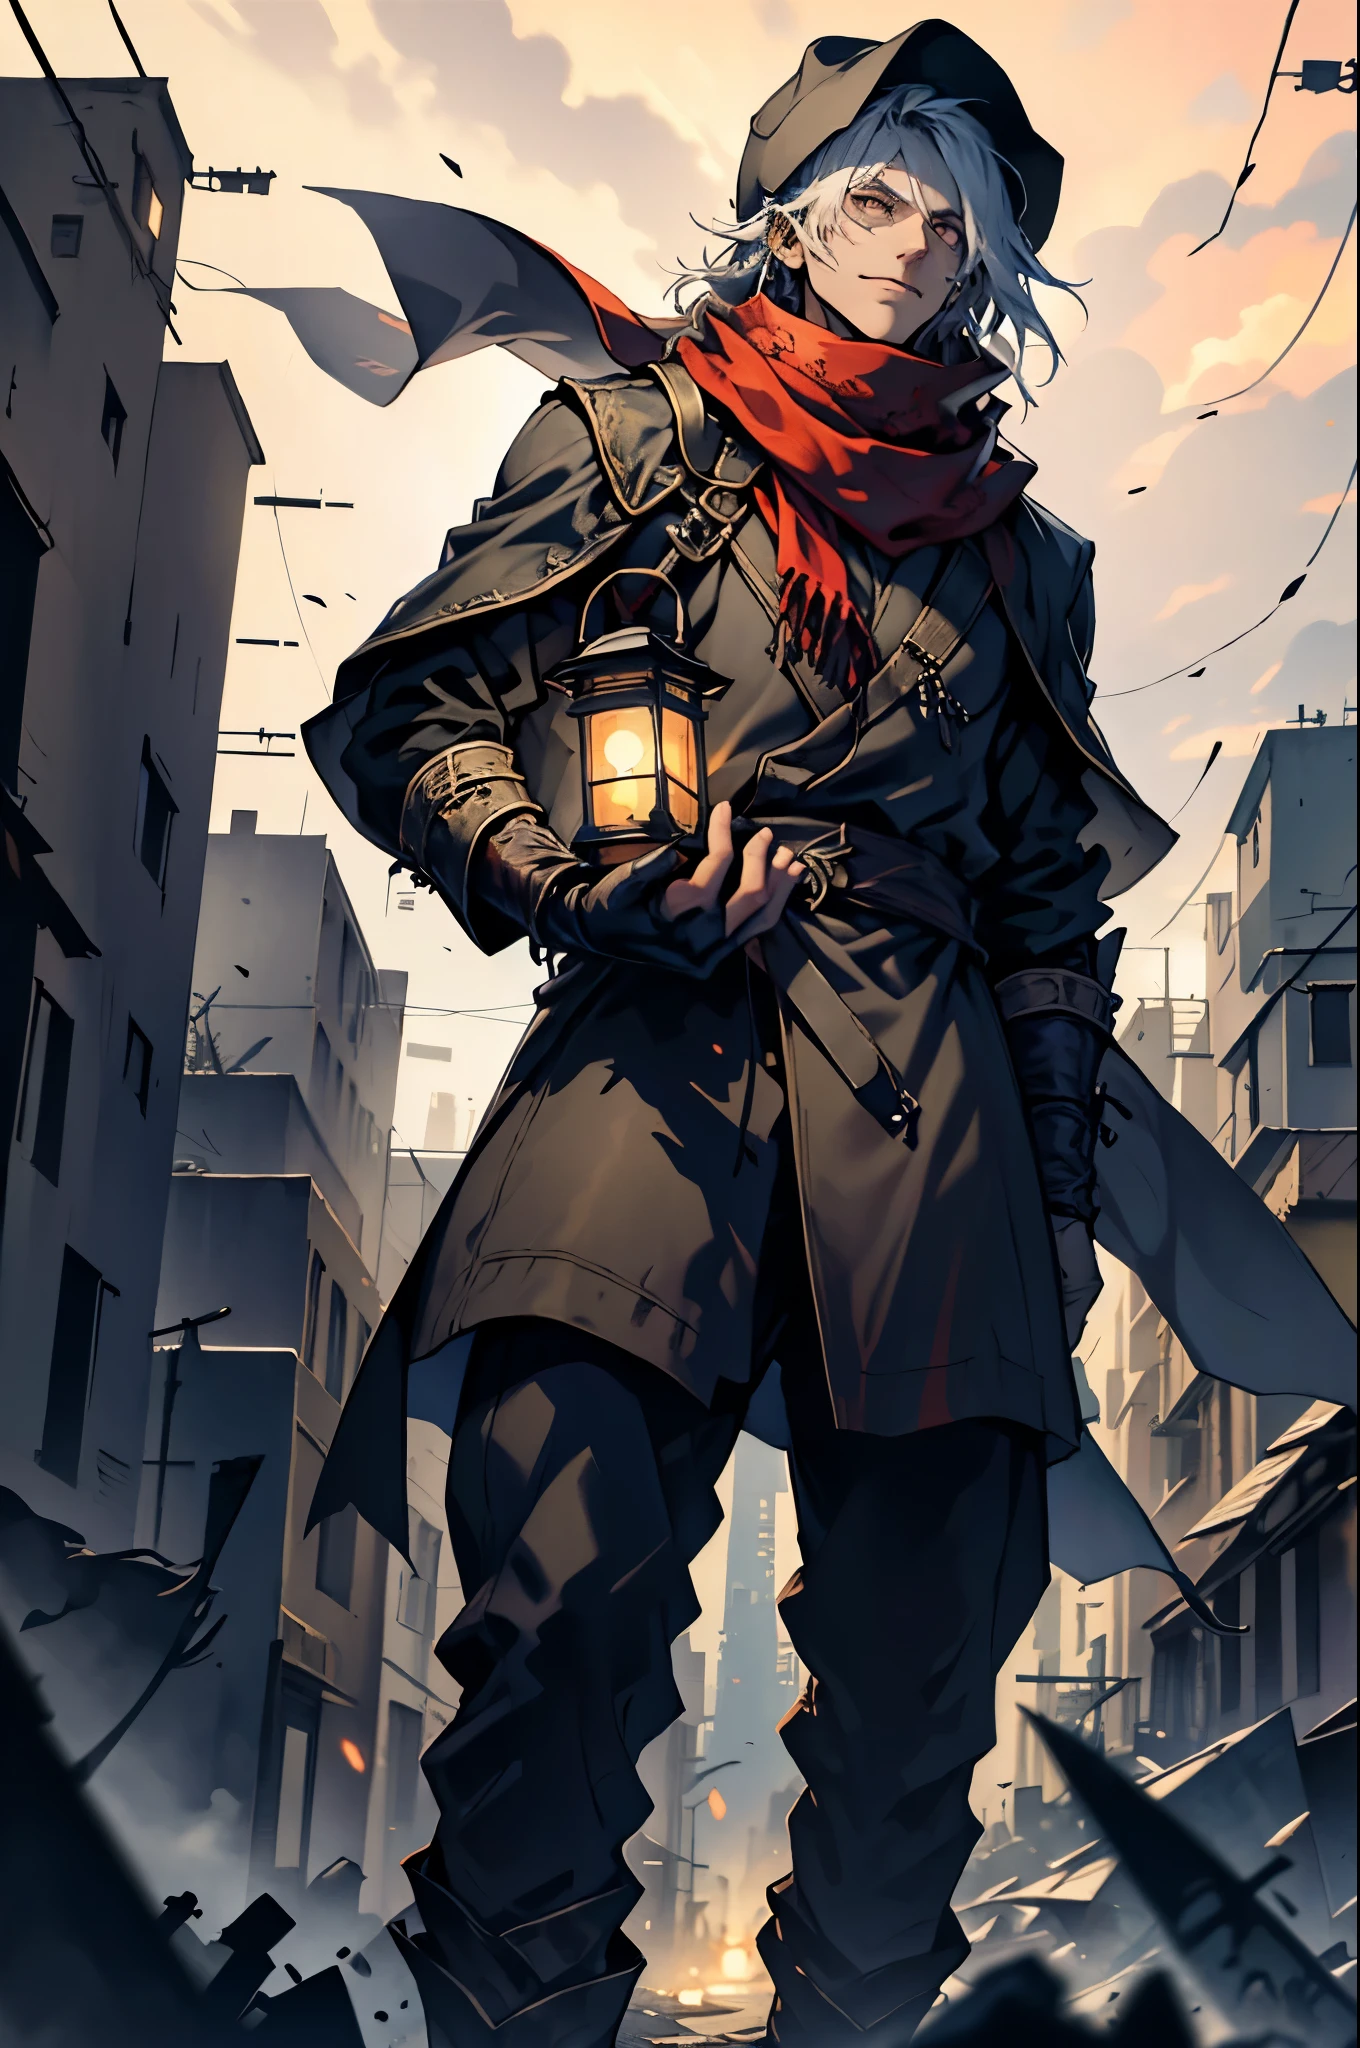 رجل يرتدي قبعة ووشاح على خلفية مدينة مدمرة, (يحمل فانوسًا وخنجرًا), (خنجر في اليد اليمنى), (فانوس في اليد اليسرى), فوريشكا, نظرة صعبة, ارتفاع كامل